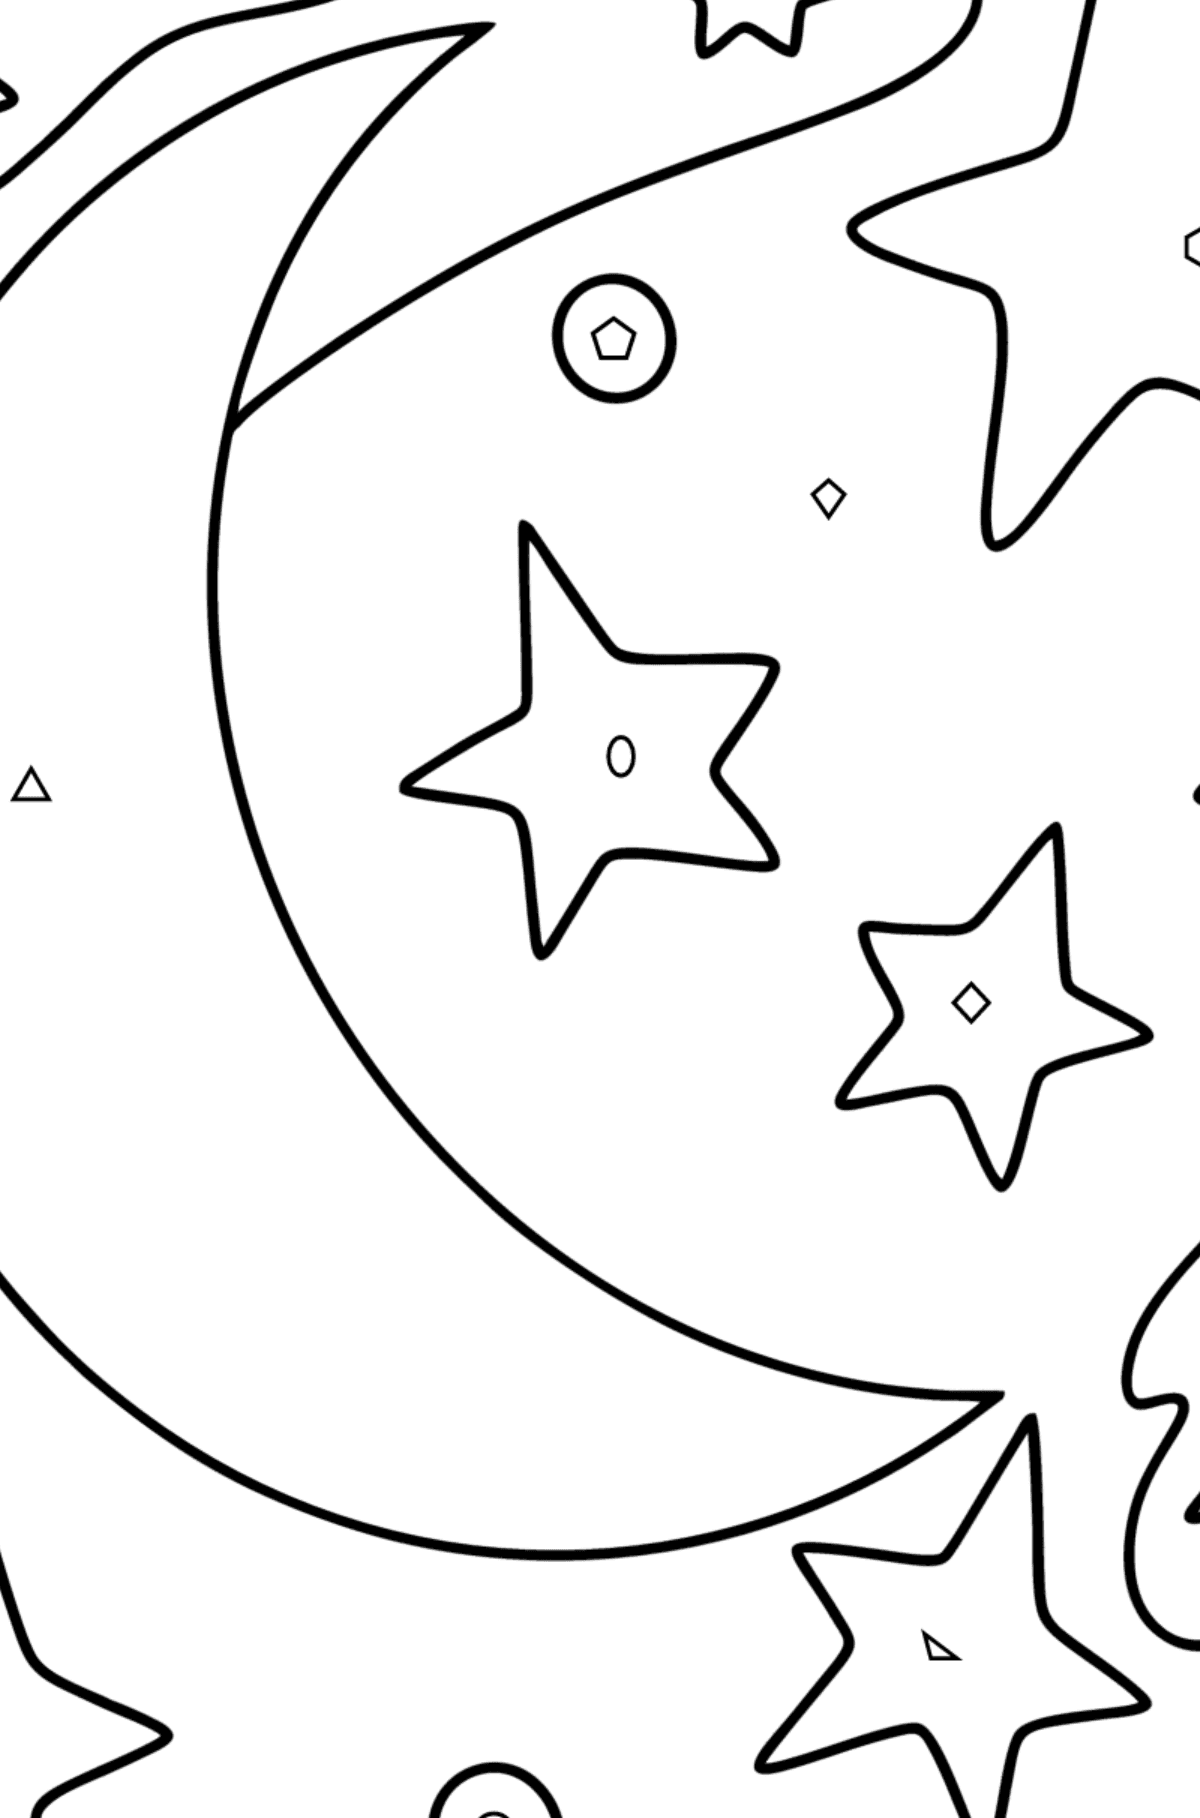 Kolorowanka księżyc i gwiazdy - Kolorowanie według figur geometrycznych dla dzieci